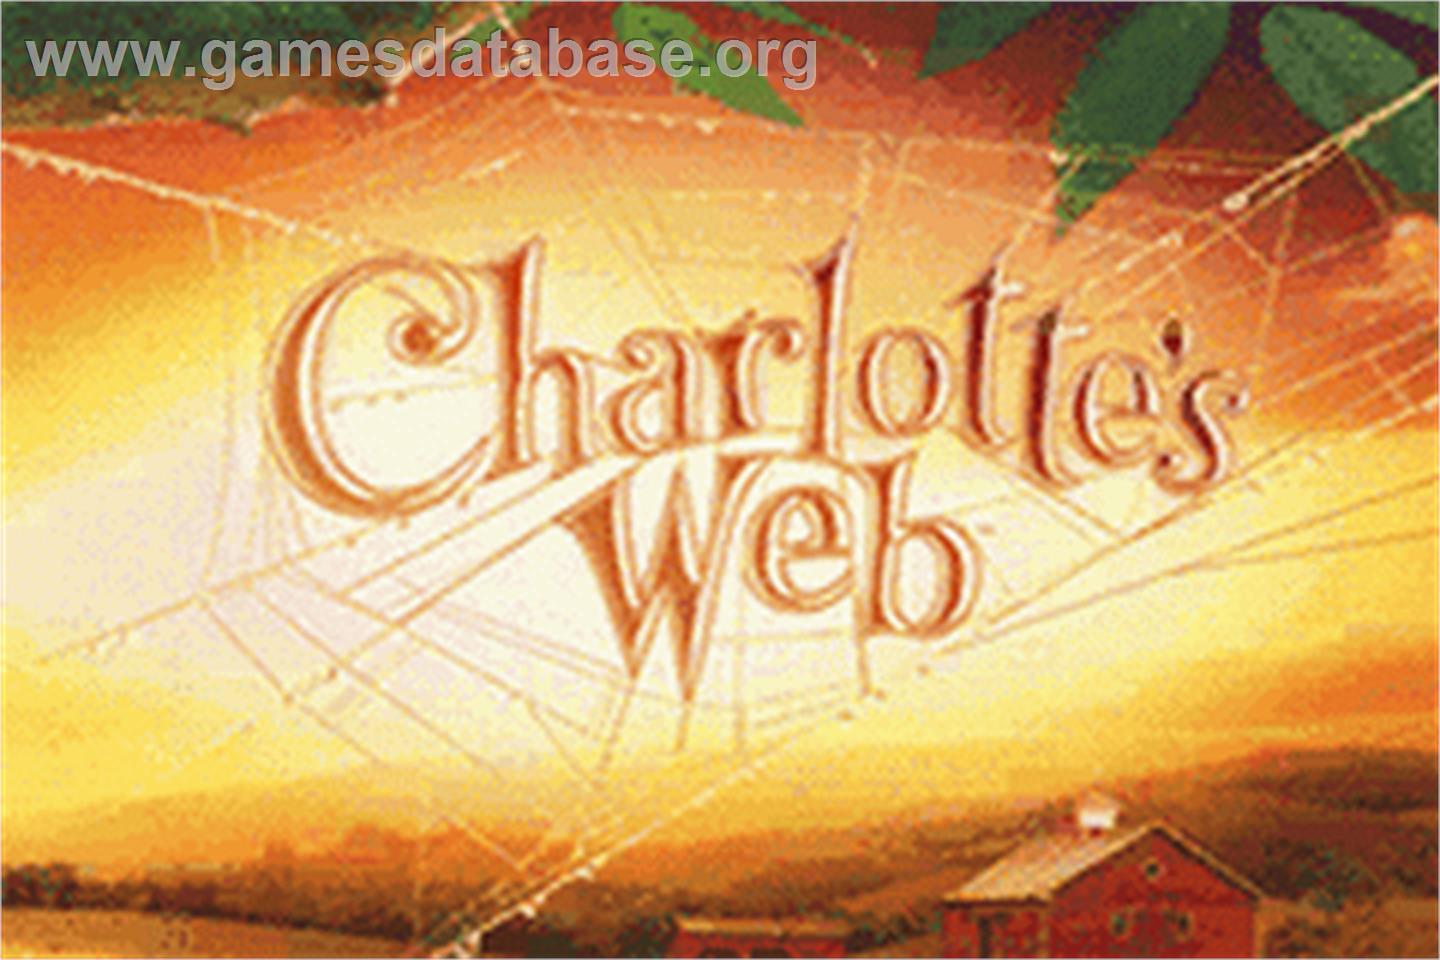 Charlotte's Web - Nintendo Game Boy Advance - Artwork - Title Screen